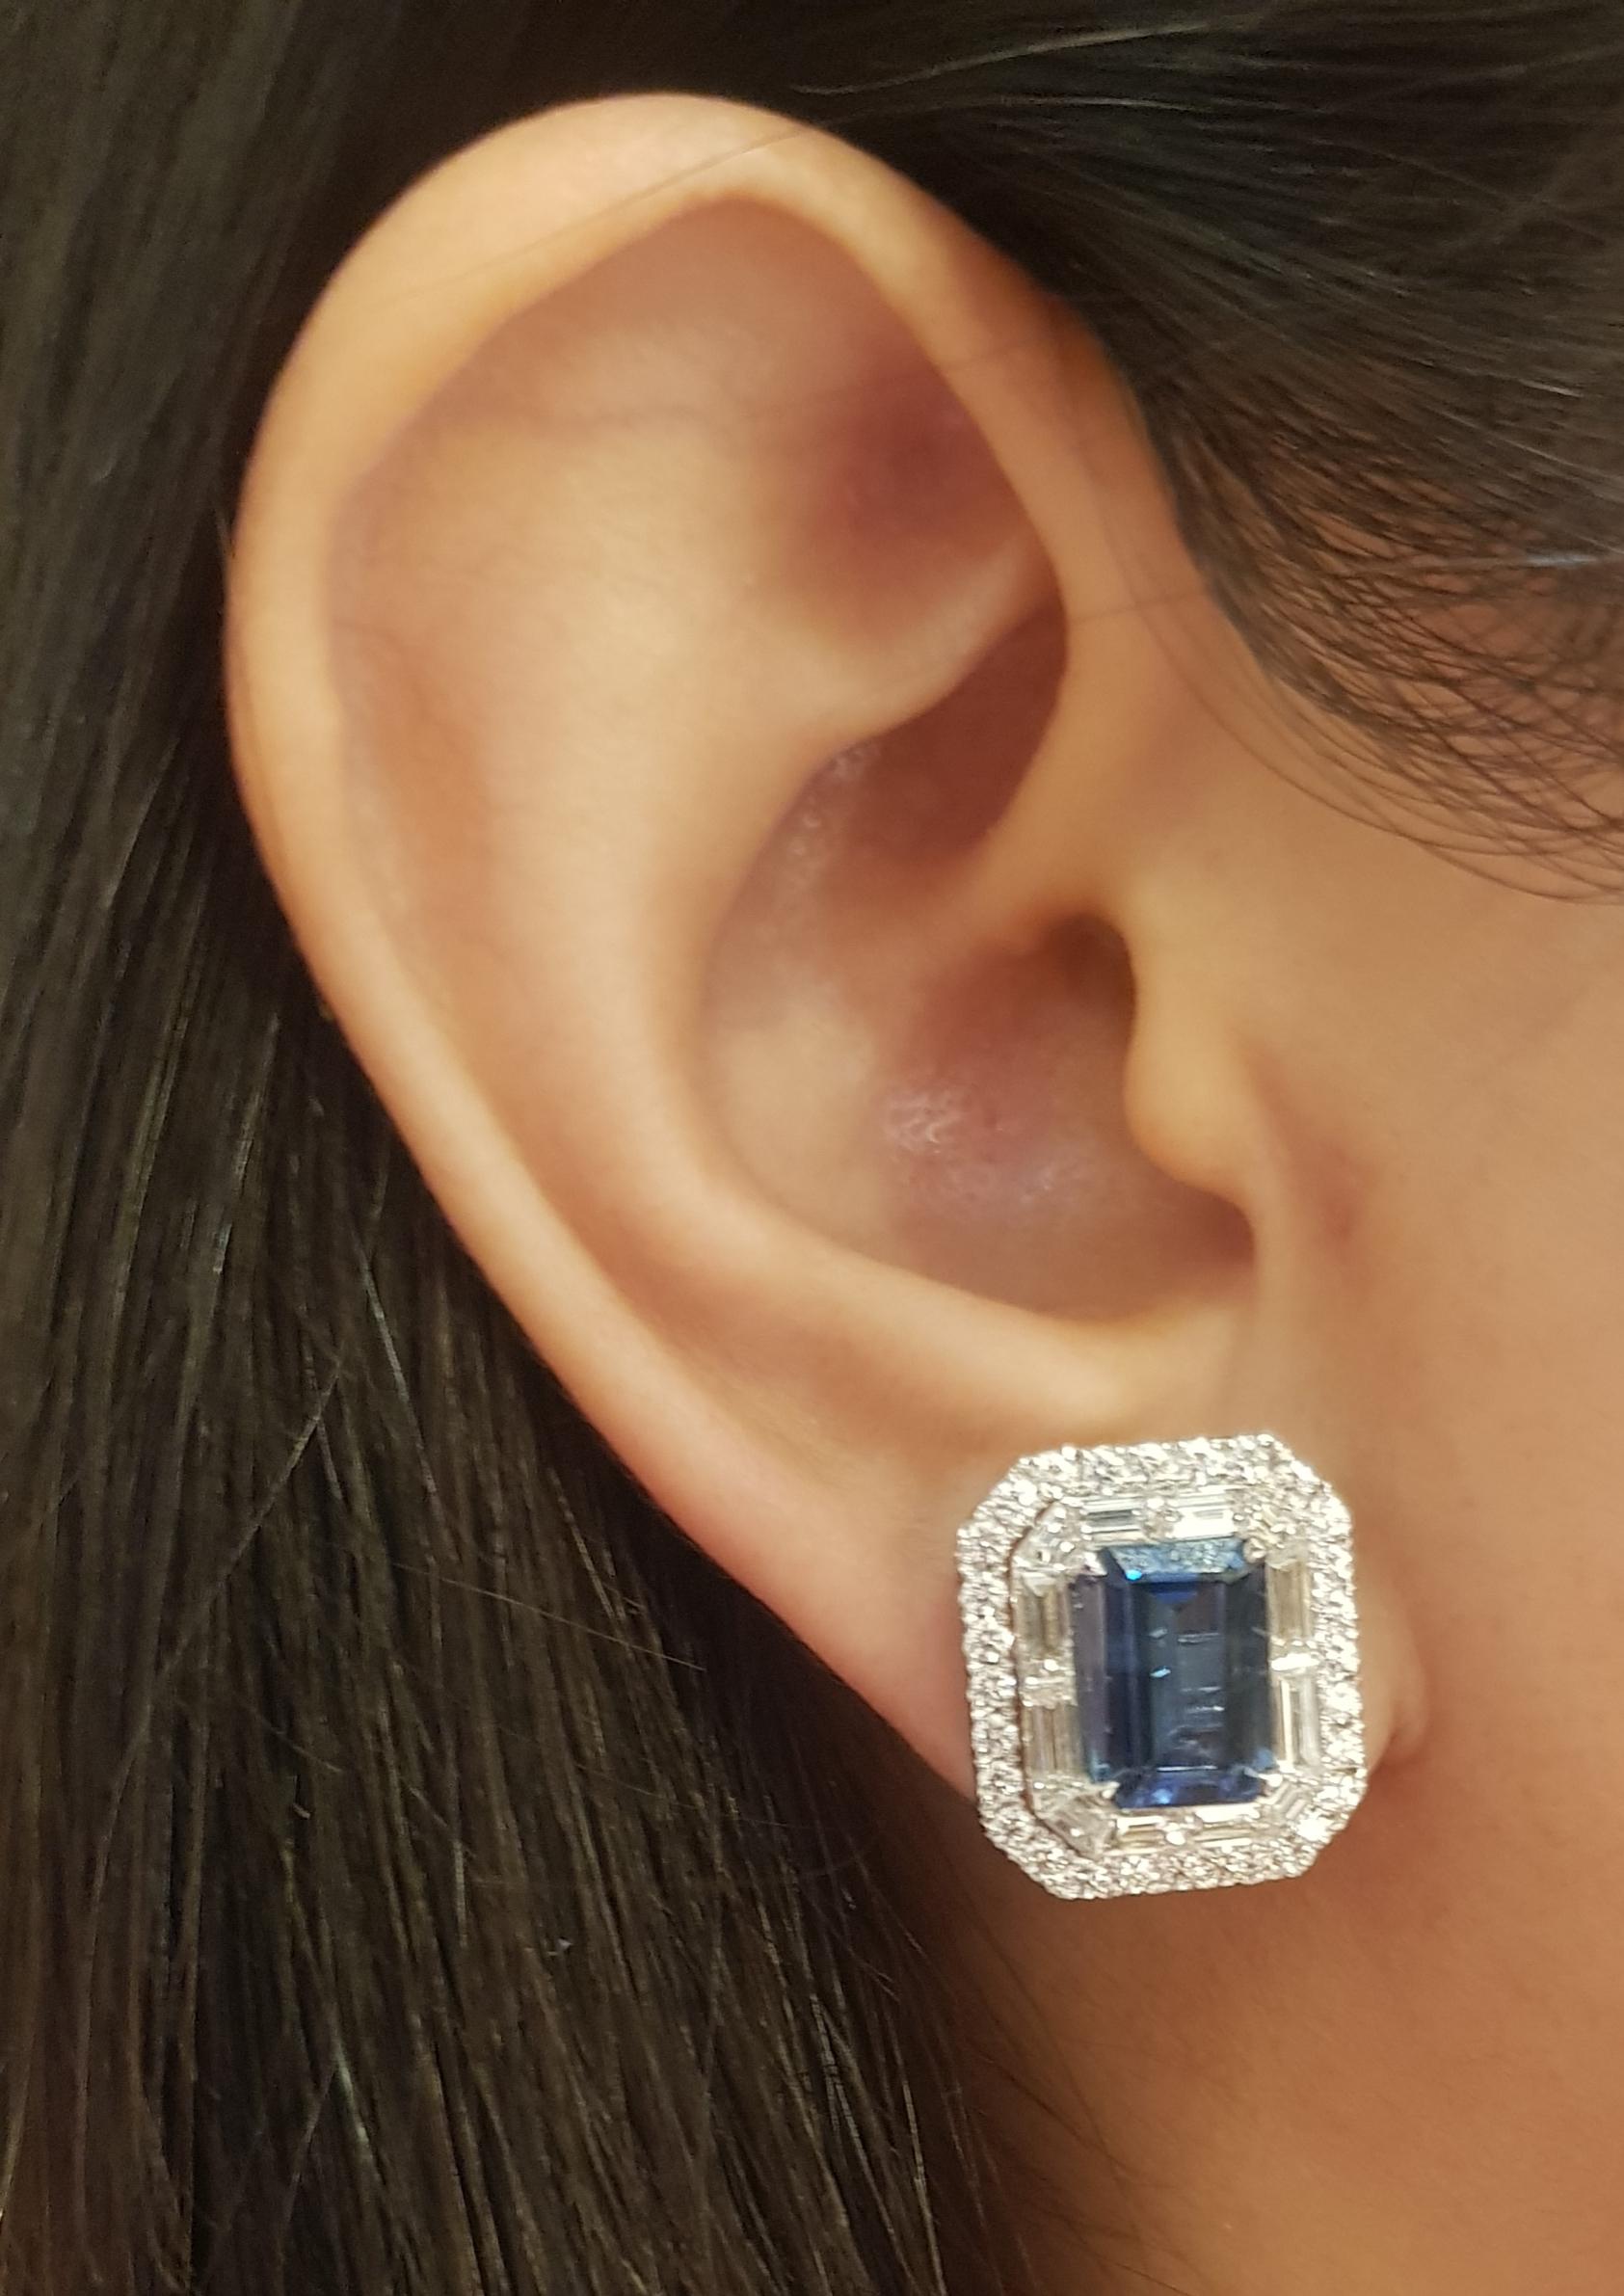 Blauer Saphir 5,84 Karat mit Diamant 3,07 Karat Ohrringe in 18K Weißgoldfassung

Breite: 1,5 cm 
Länge: 1,7 cm
Gesamtgewicht: 13,12 Gramm

